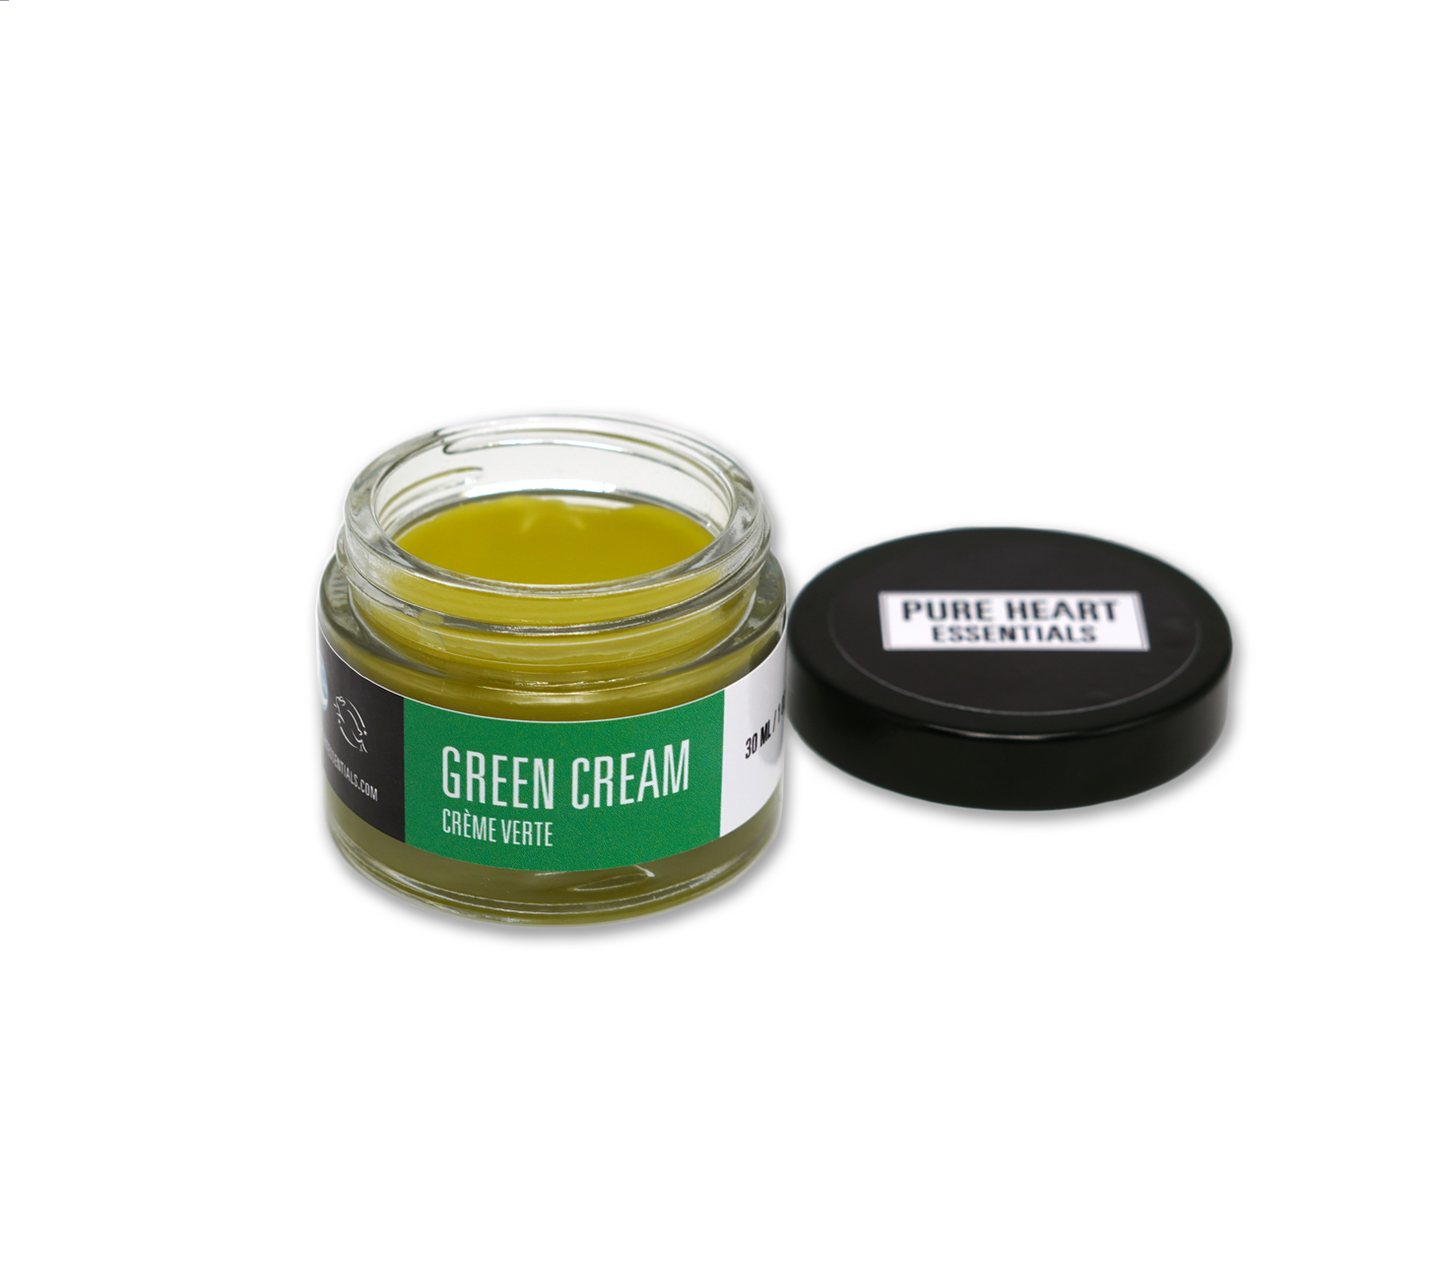 Green Cream - Best Seller! - Pure Heart Essentials